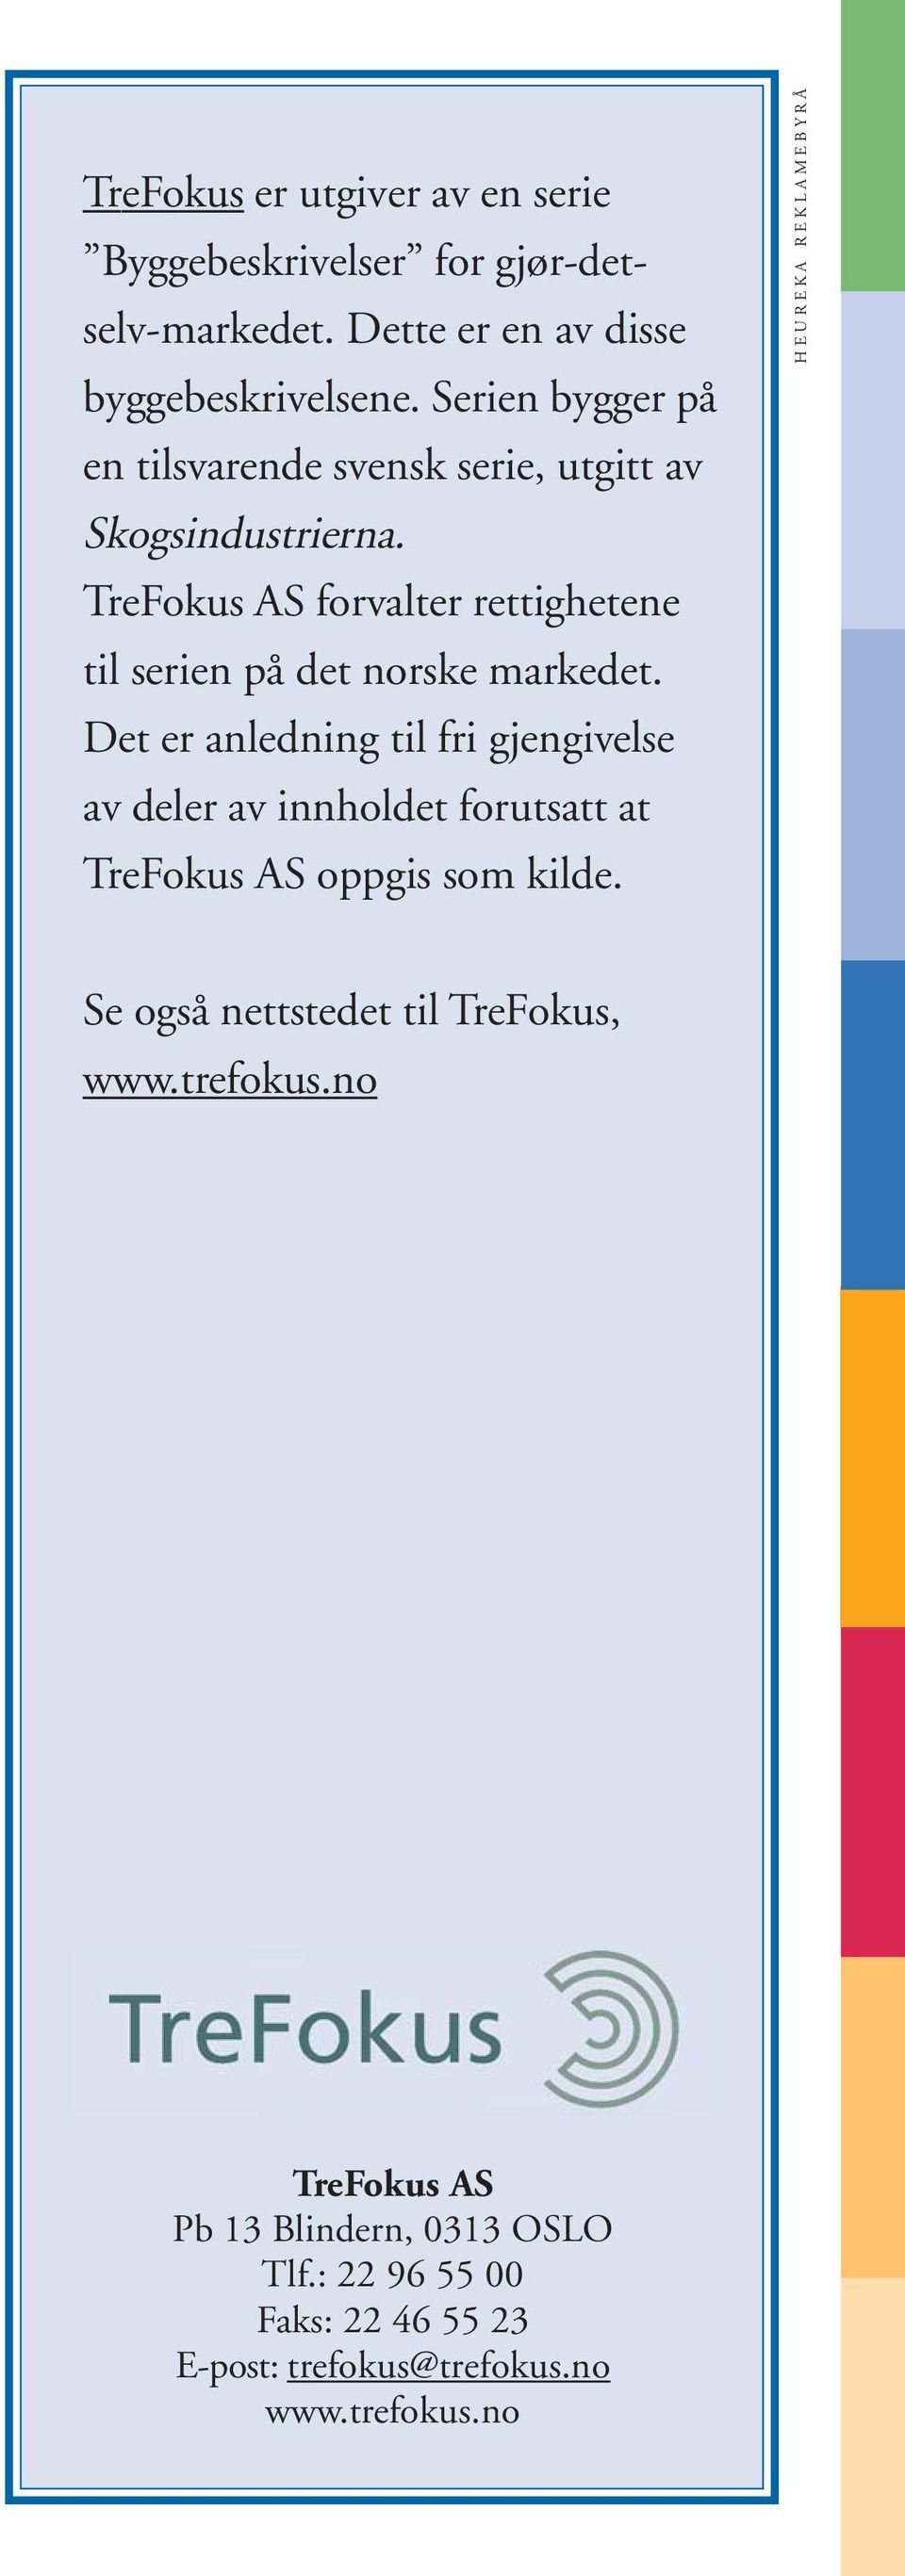 TreFokus AS forvalter rettighetene til serien på det norske markedet.